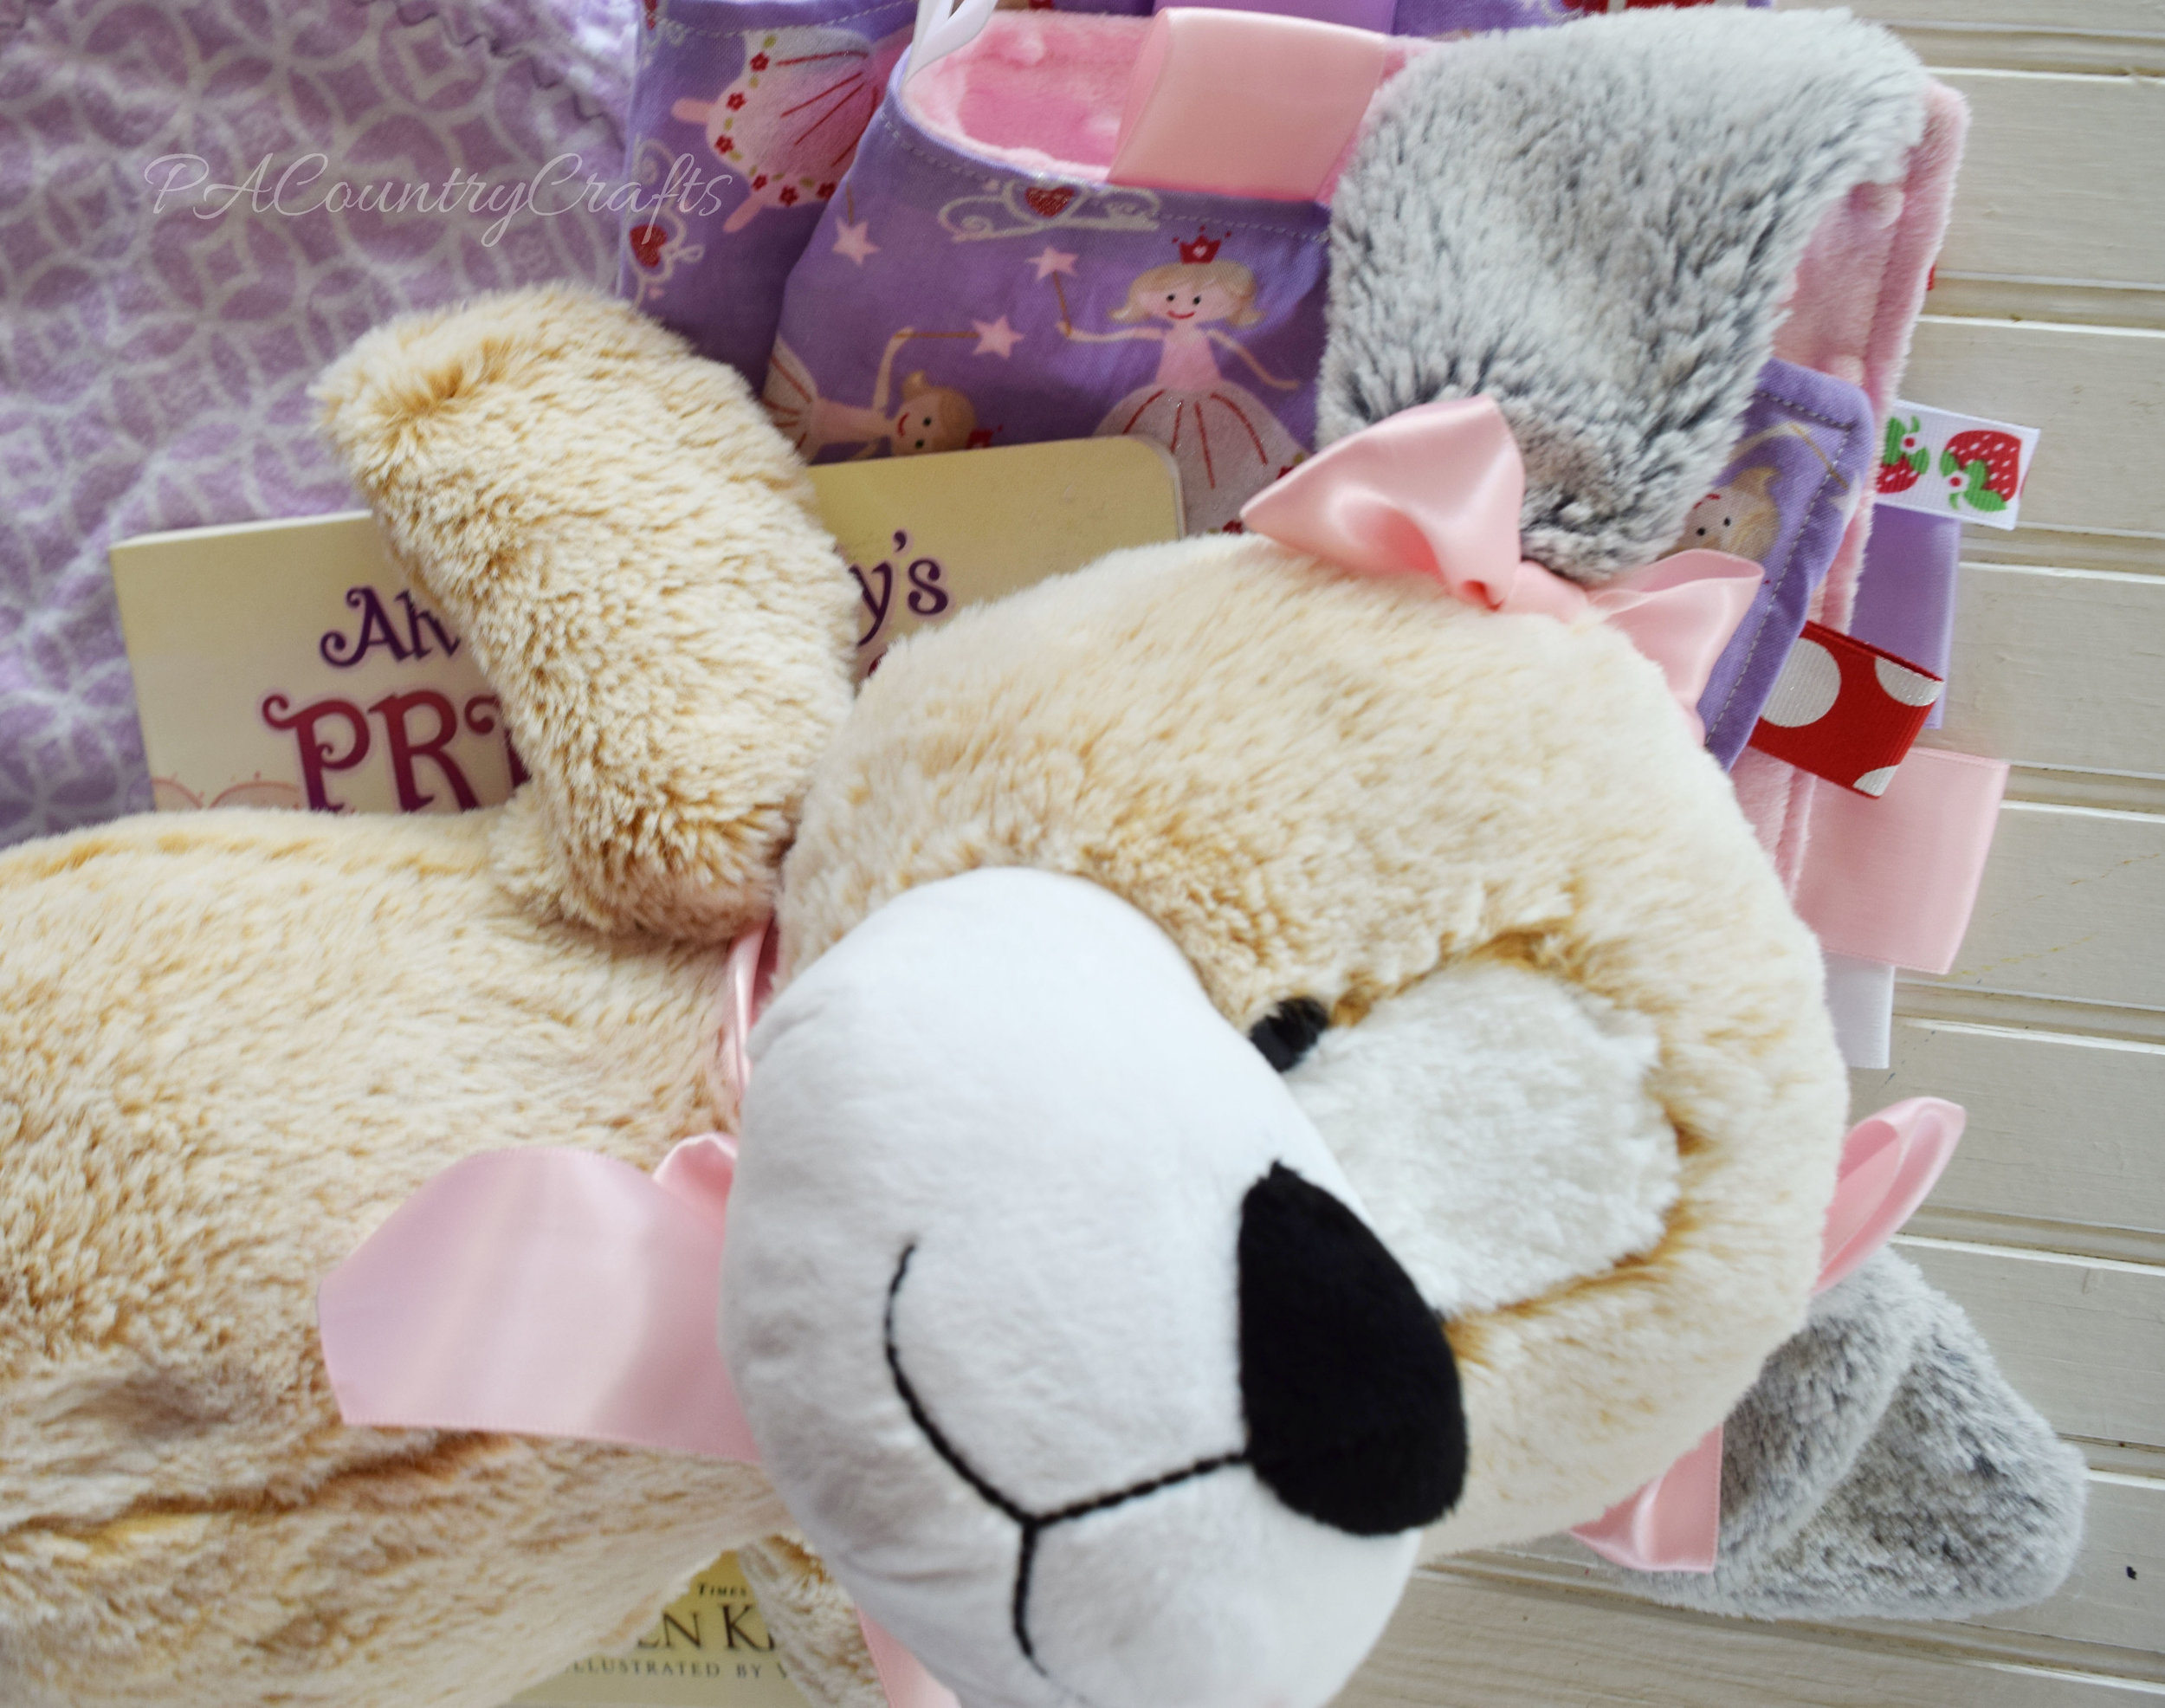 Add ribbon bows to make a stuffed animal match the gift.